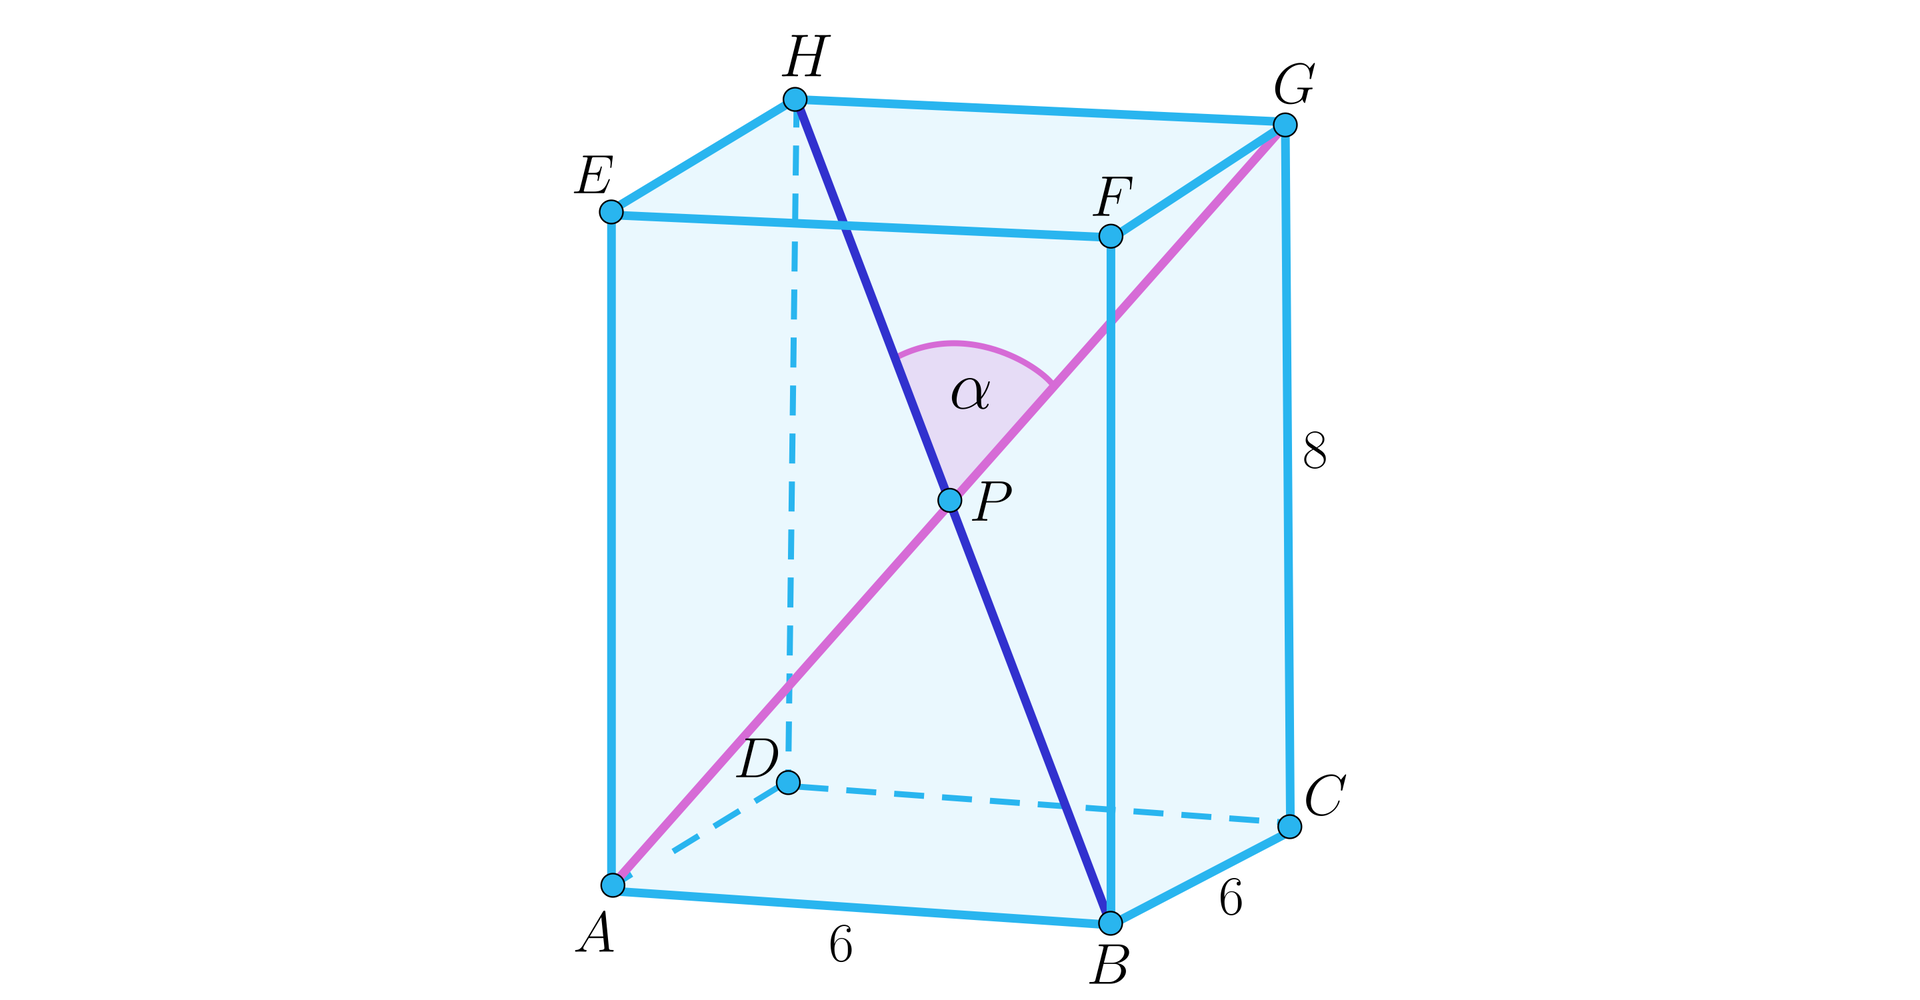 Ilustracja przedstawia graniastosłup prawidłowy czworokątny A B C D E F G H, gdzie wierzchołek F znajduje się nad wierzchołkiem A, wierzchołek E nad B, wierzchołek G nad C oraz wierzchołek H nad D. Na rysunku zaznaczono przekątną B H oraz przekątną A B. Obie przekątne przecinają się w punkcie P i tworzą kąt alfa. Odcinek A B ma długość sześć, natomiast odcinek G C ma długość osiem. 